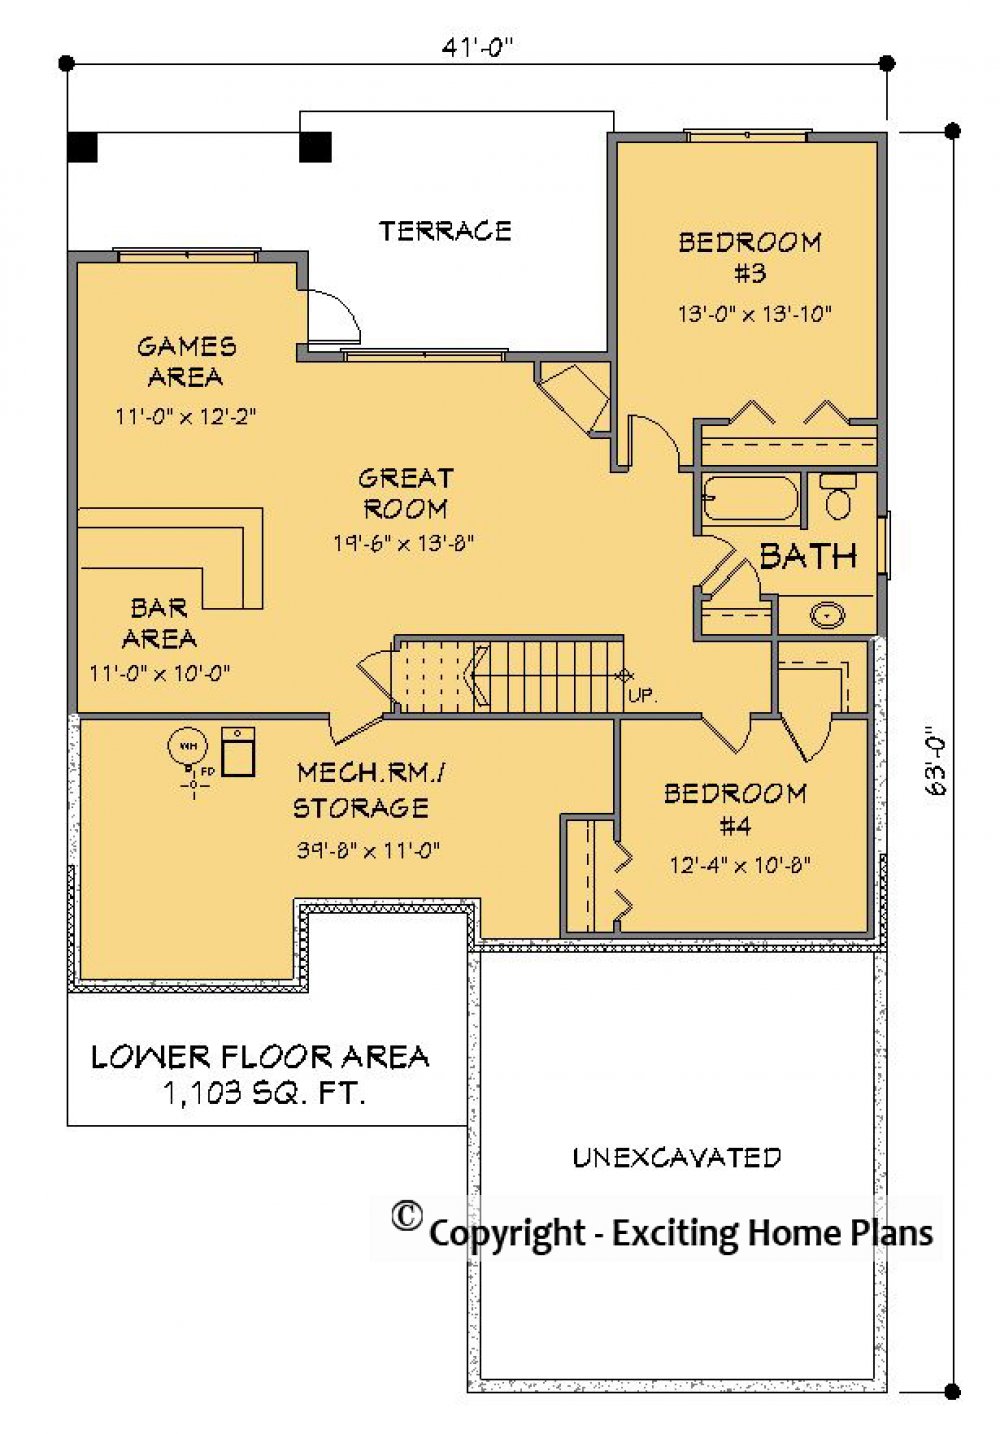 House Plan E1603-10 Lower Floor Plan